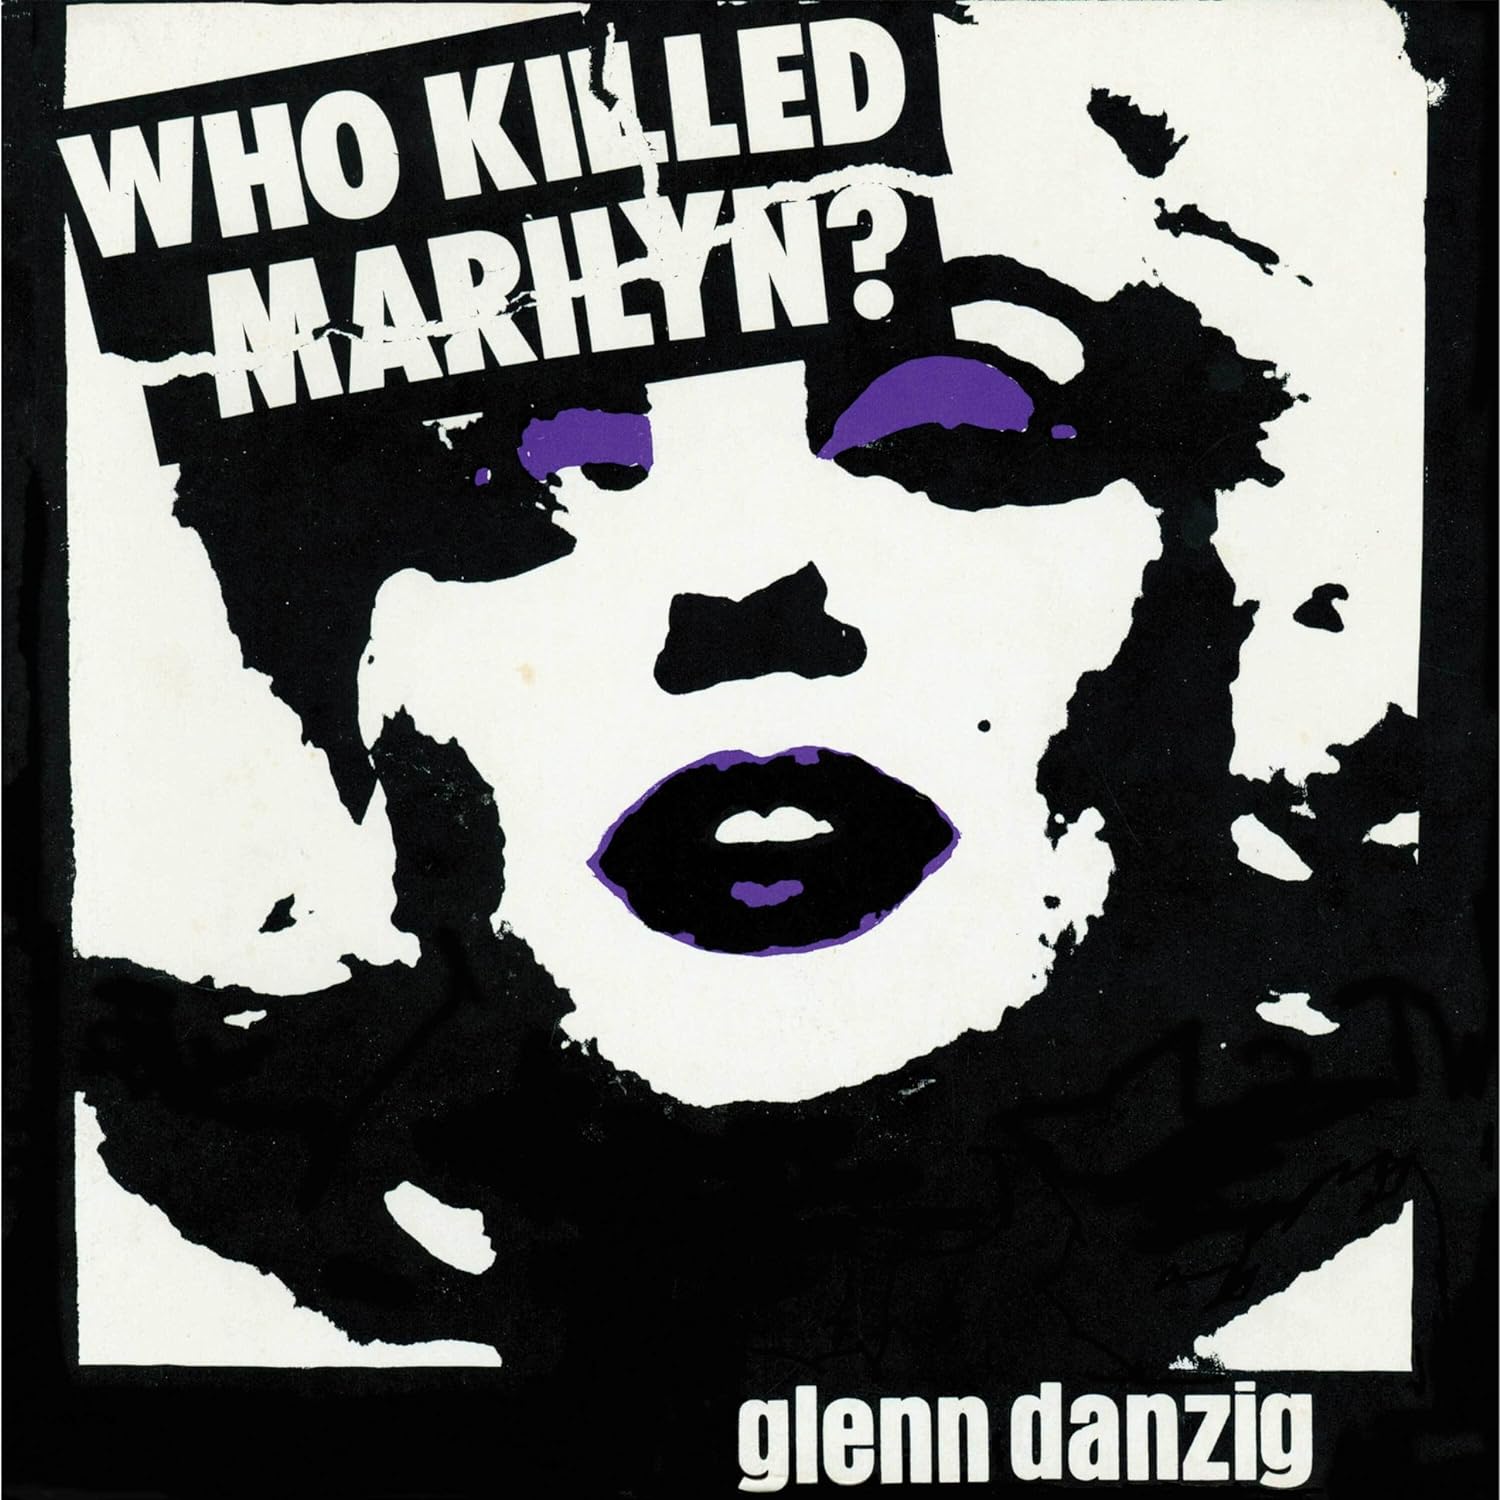 Danzig, Glenn - Who Killed Marilyn? (Ltd. Ed. 2023 12" EP Purple vinyl gatefold reissue) - Vinyl - New